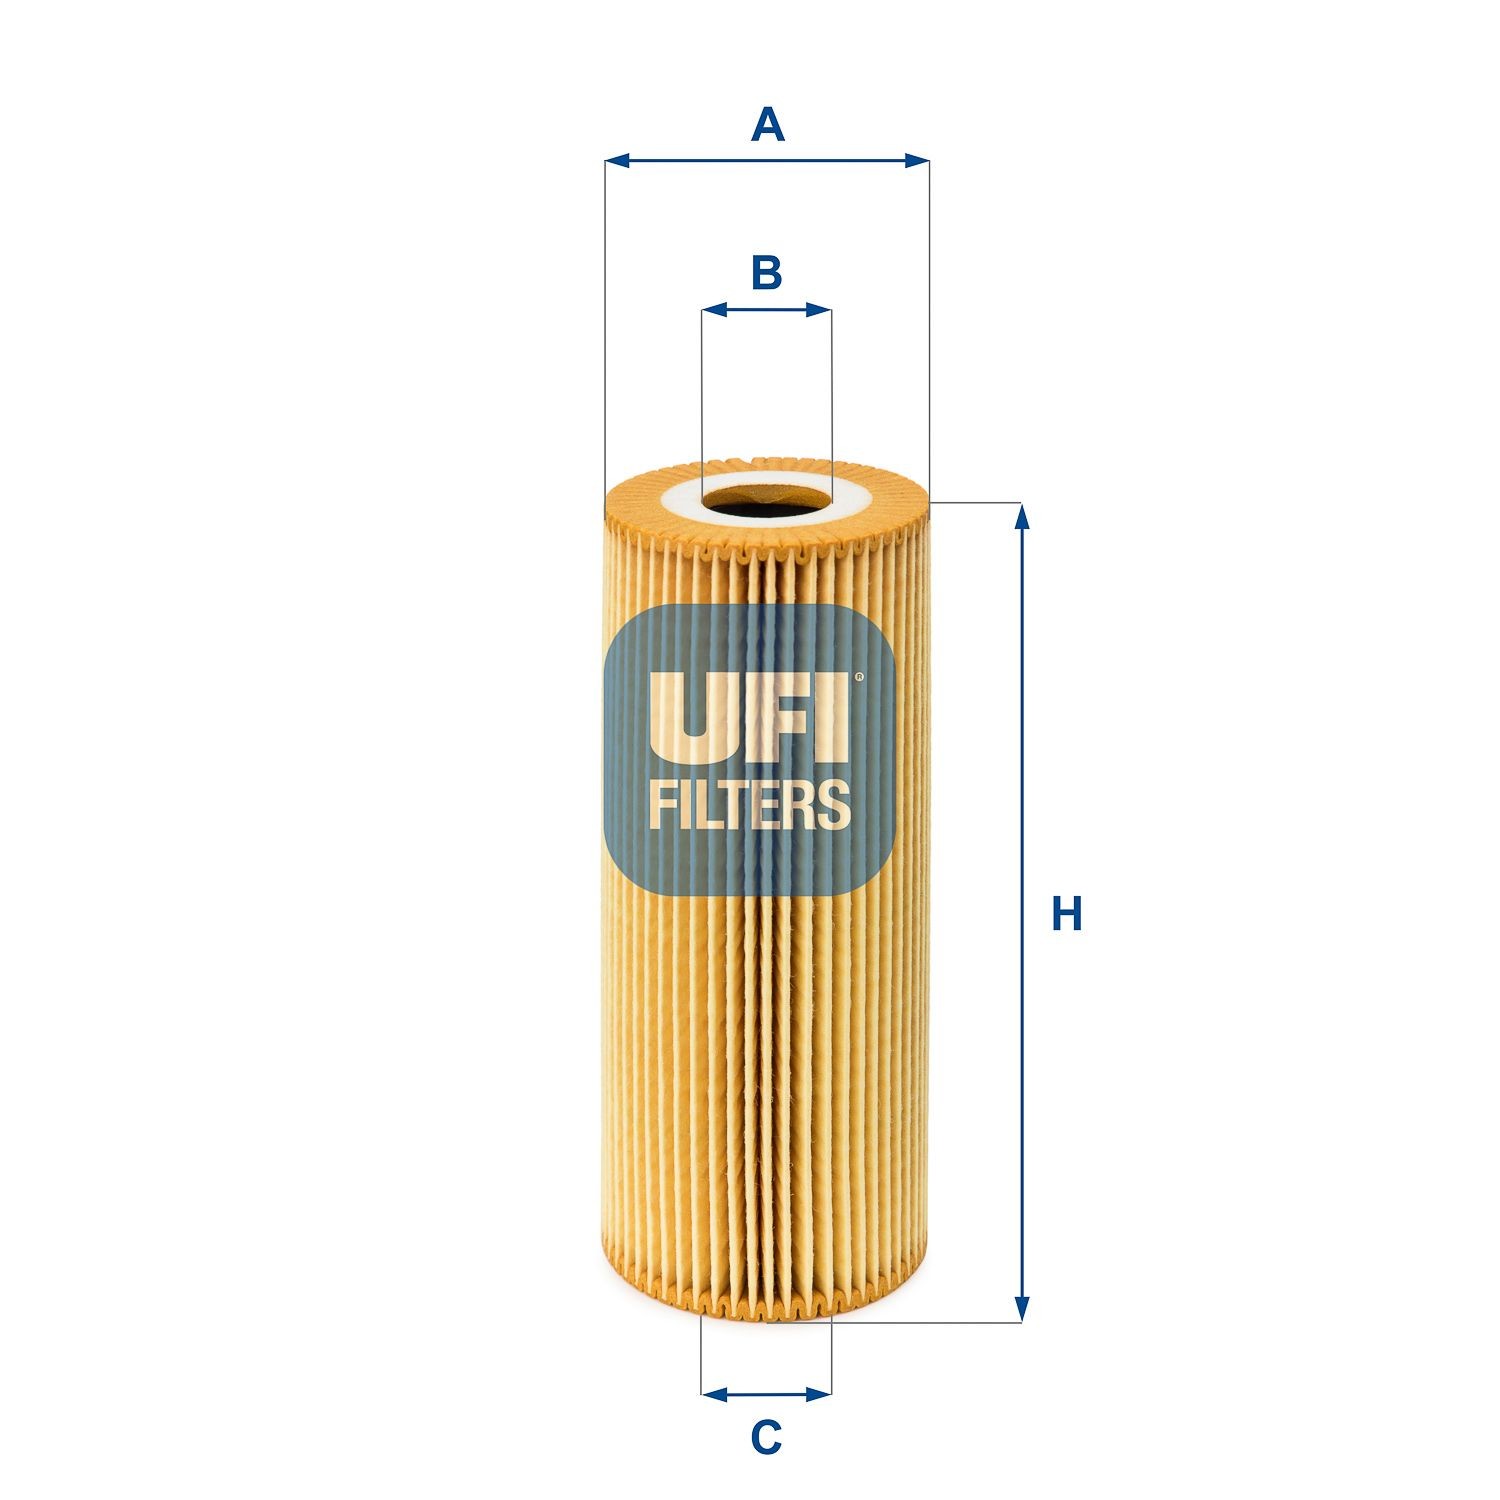 Ufi Filters 25.011.00 Filtro De Aceite